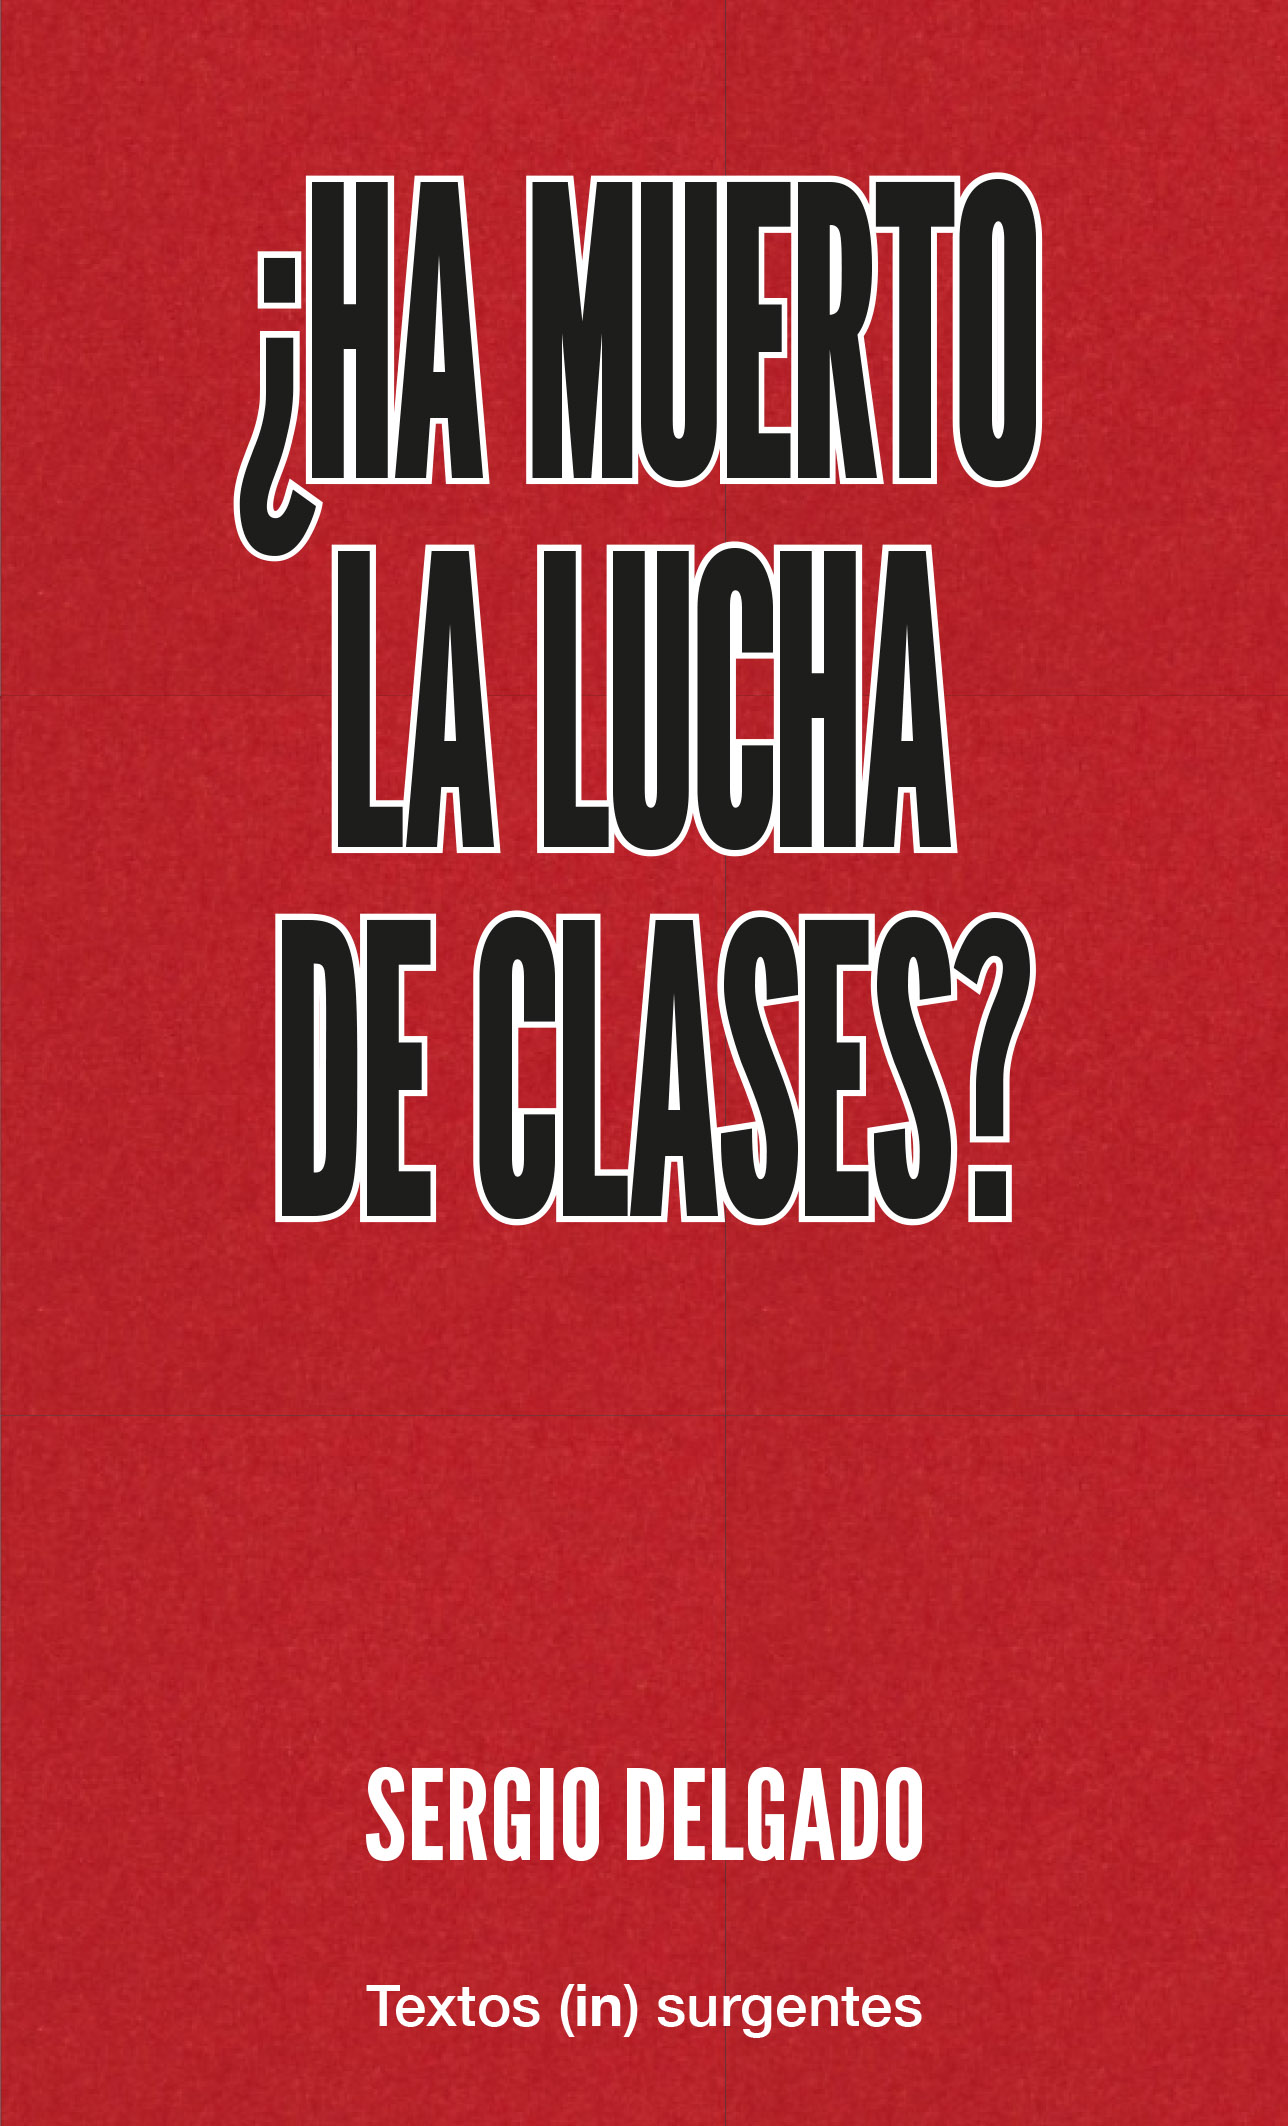 ¿HA MUERTO LA LUCHA DE CLASES? - Sergio Delgado